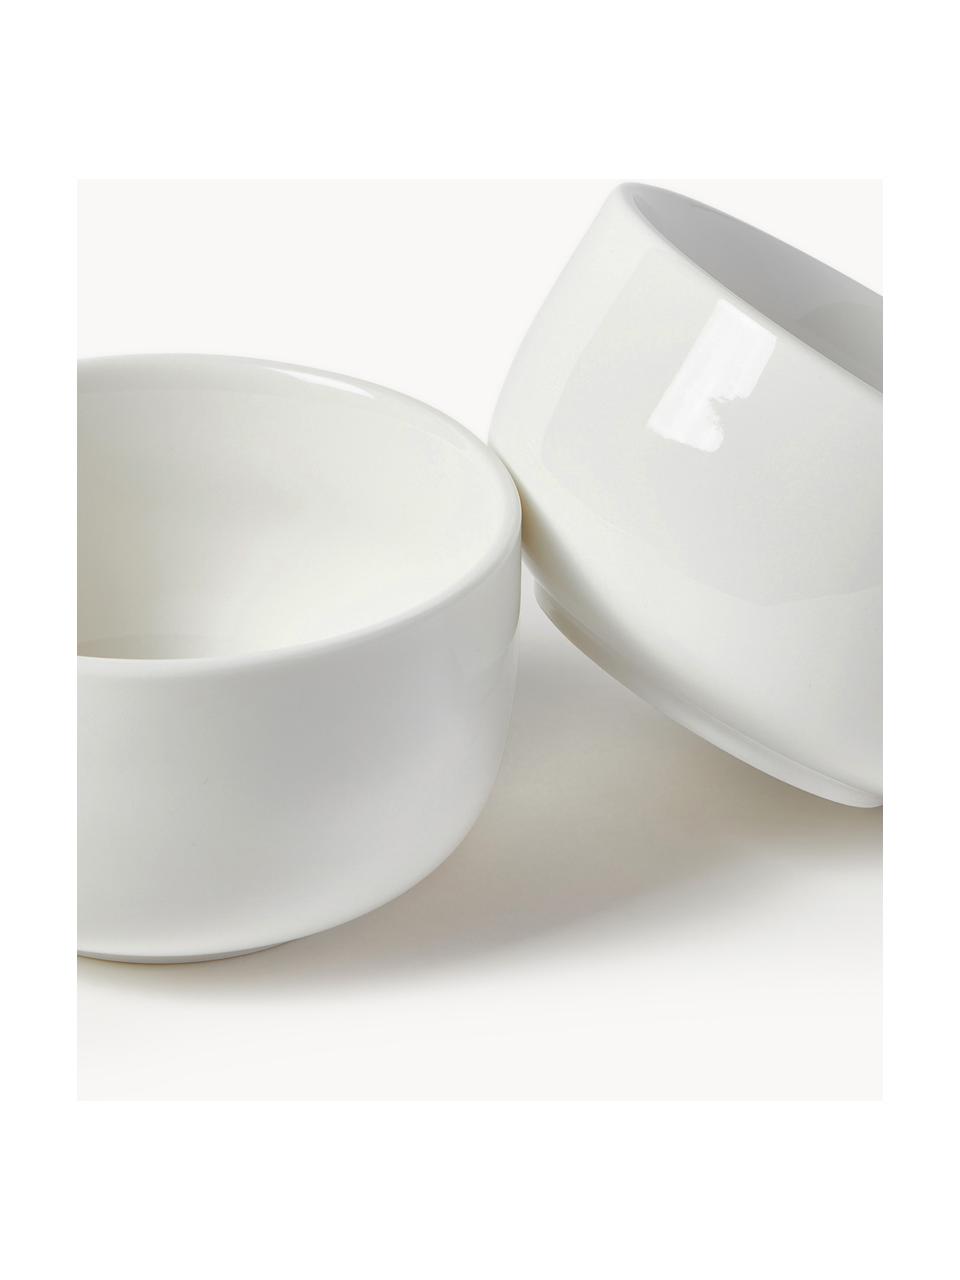 Porzellan-Dipschälchen Nessa, 3 Stück, Hochwertiges Hartporzellan, glasiert, Off White, glänzend, Ø 11 x H 6 cm